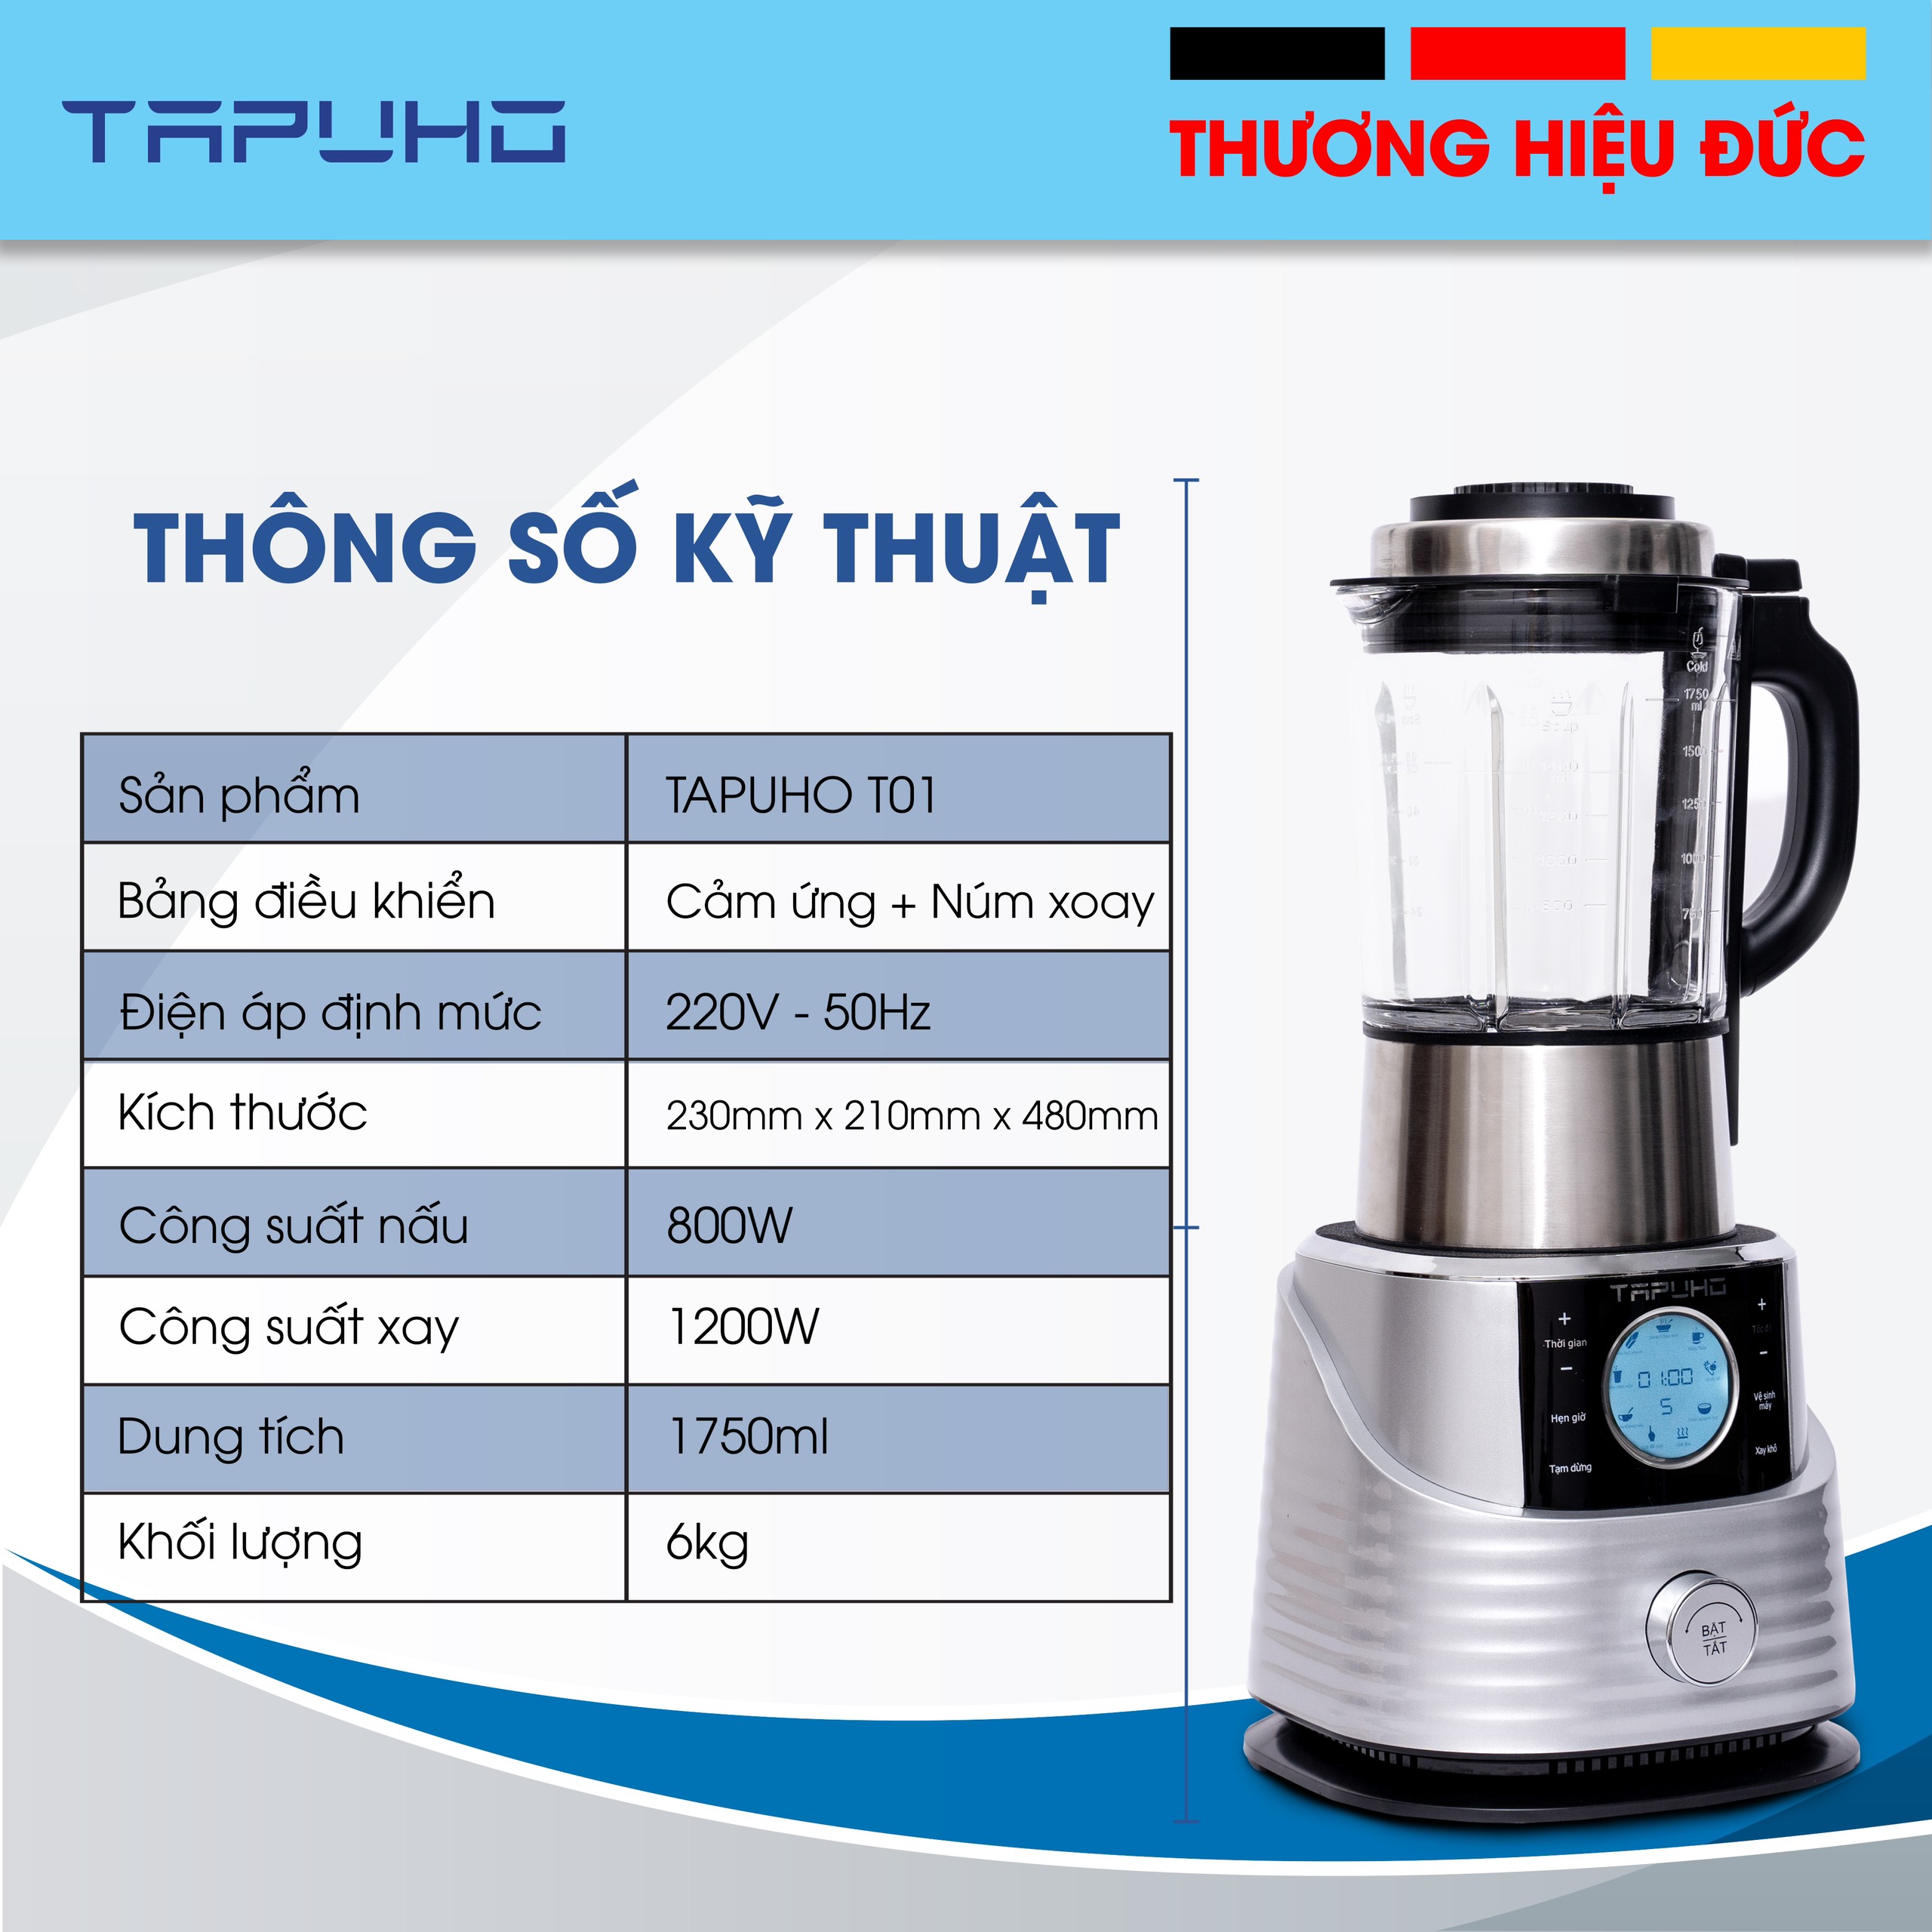 Máy làm sữa hạt, xay sinh tố TAPUHO T01 - Thương hiệu Đức (hàng chính hãng)